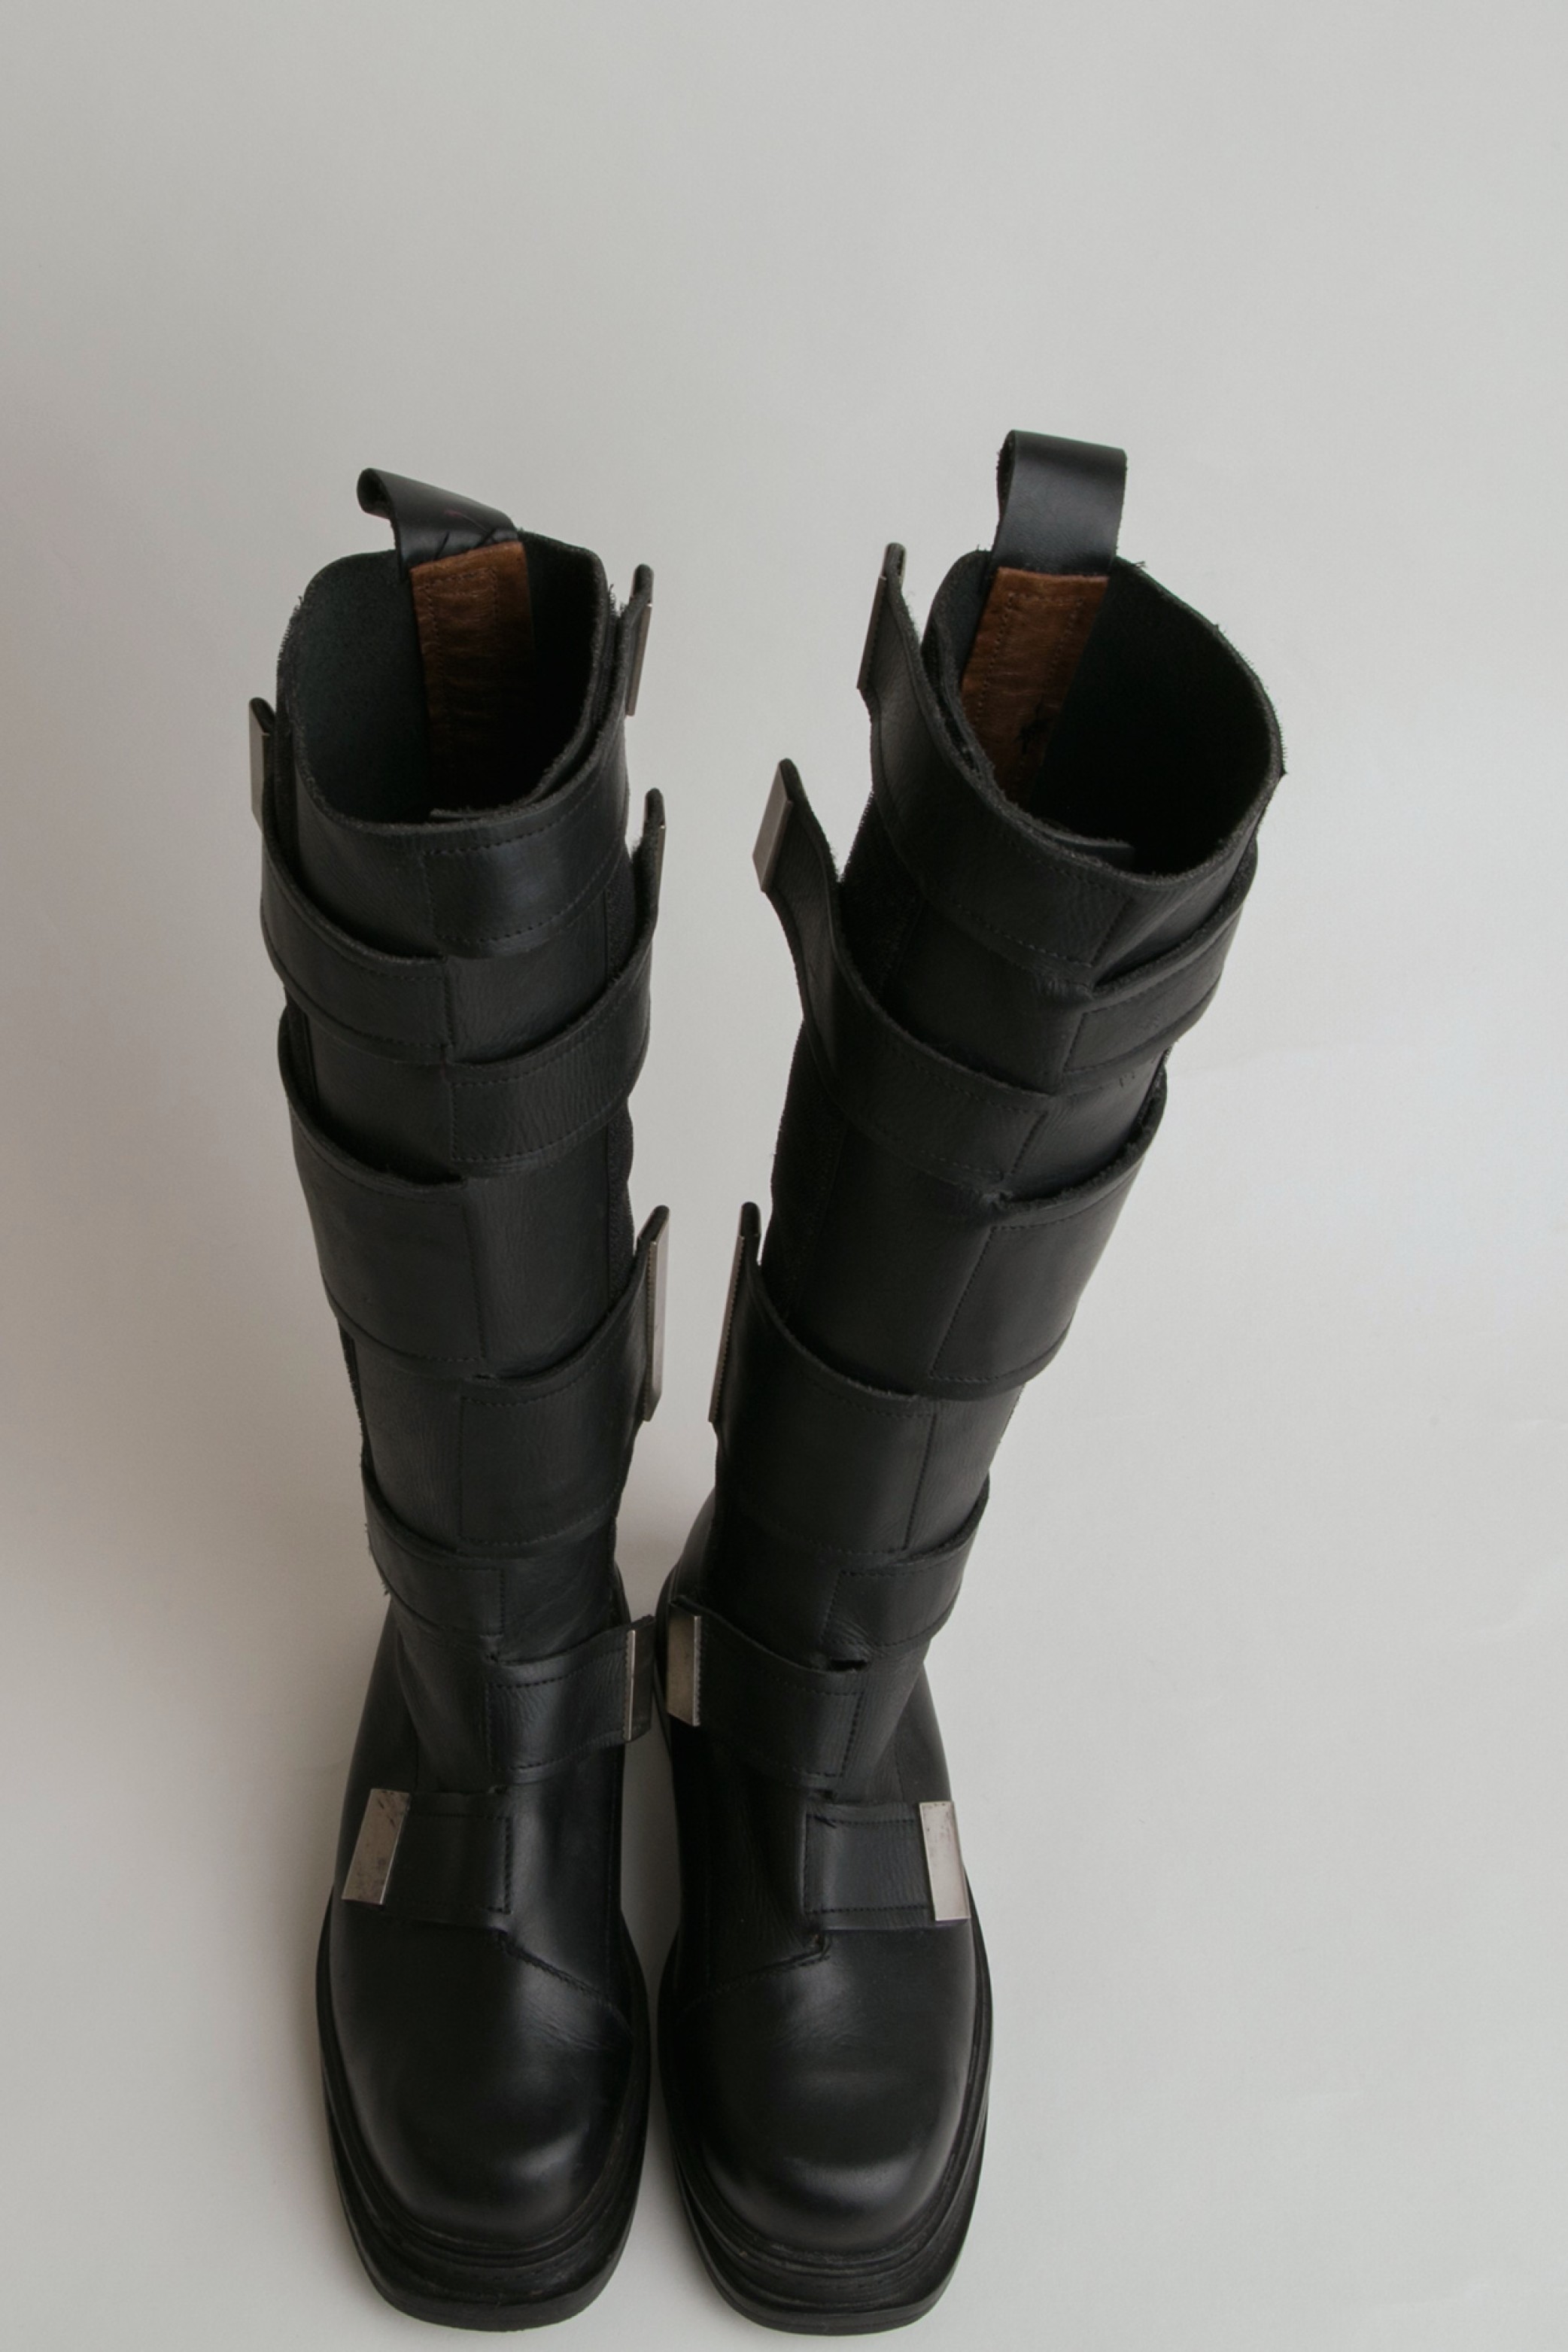 Vintage Dirk Bikkembergs Combat Boots